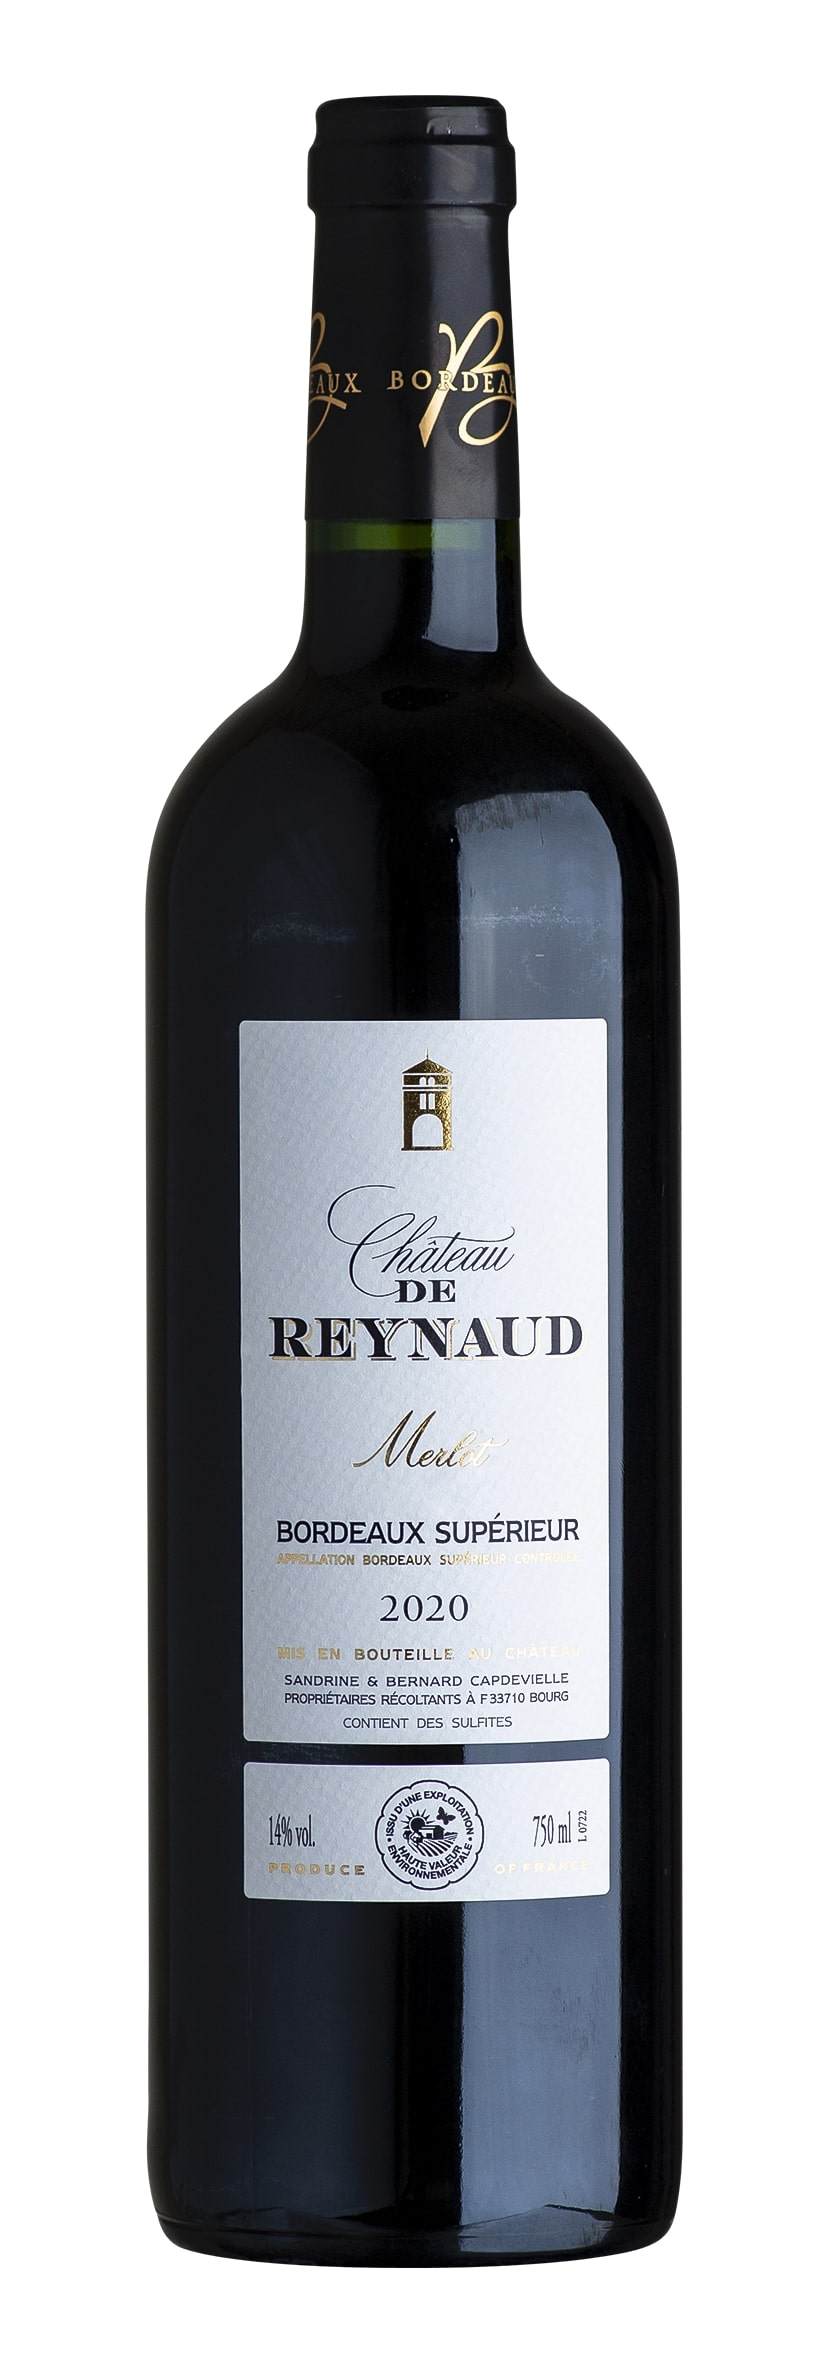 Bordeaux Supérieur rouge AOC Merlot 2020